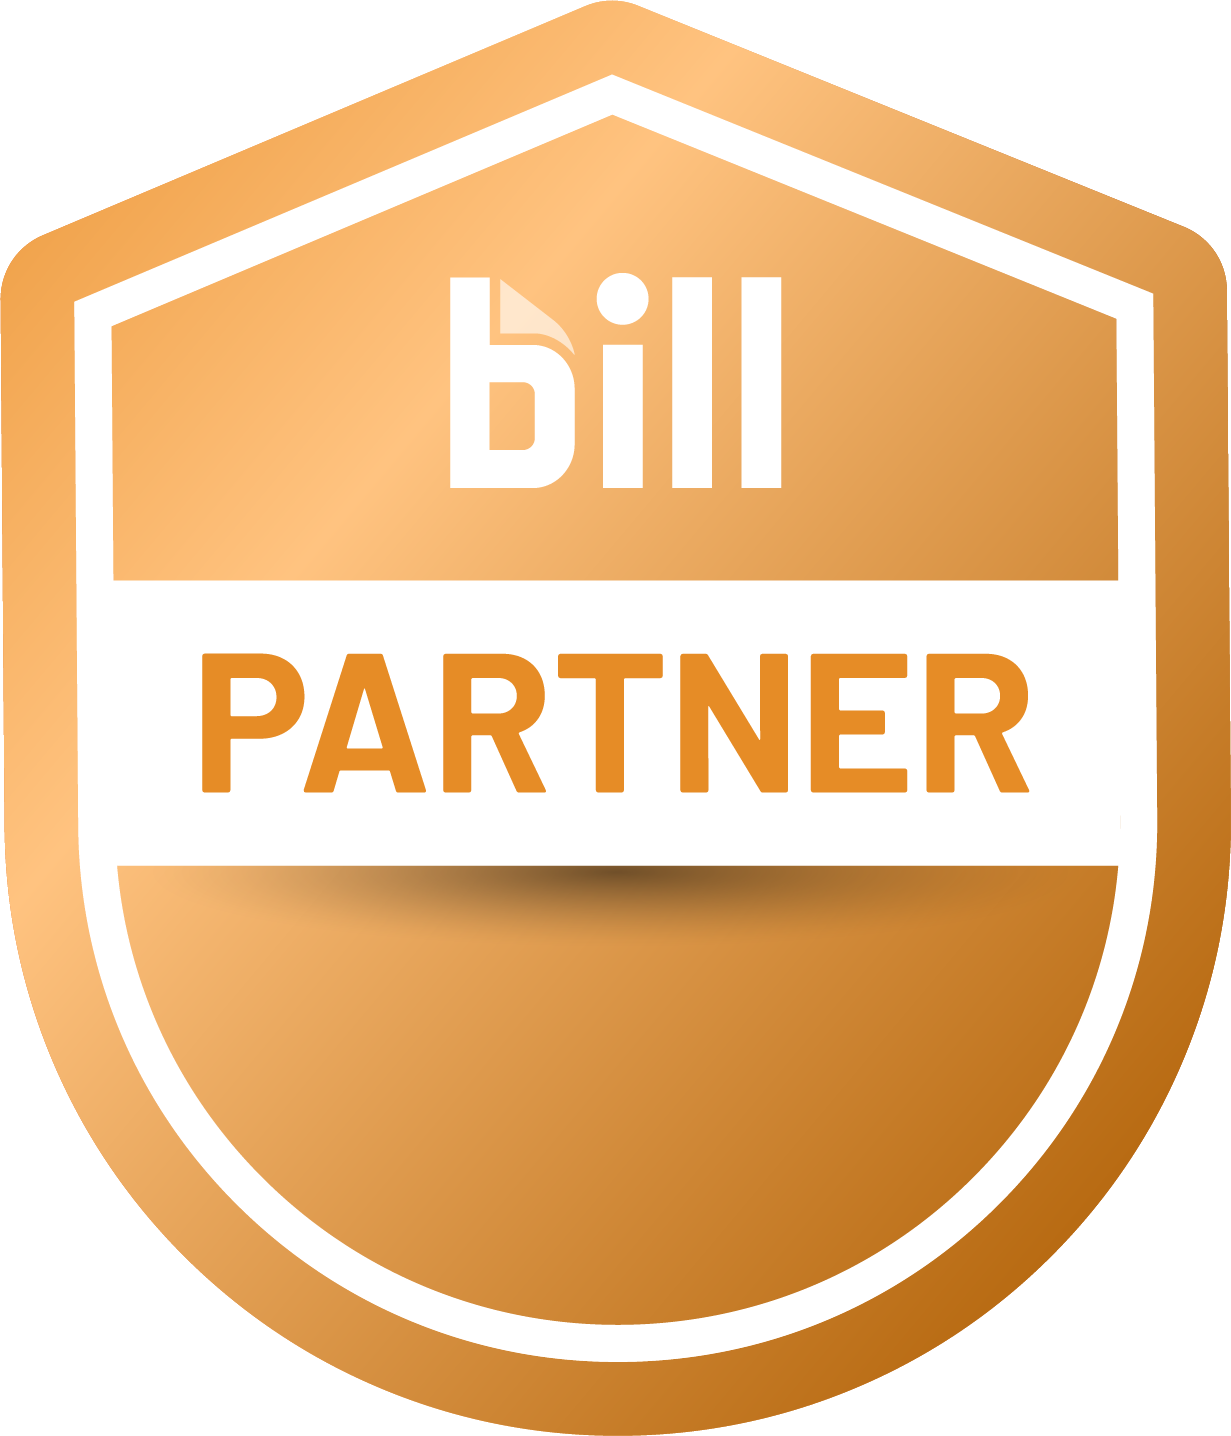 BILL Accountant Partner Program - Partner